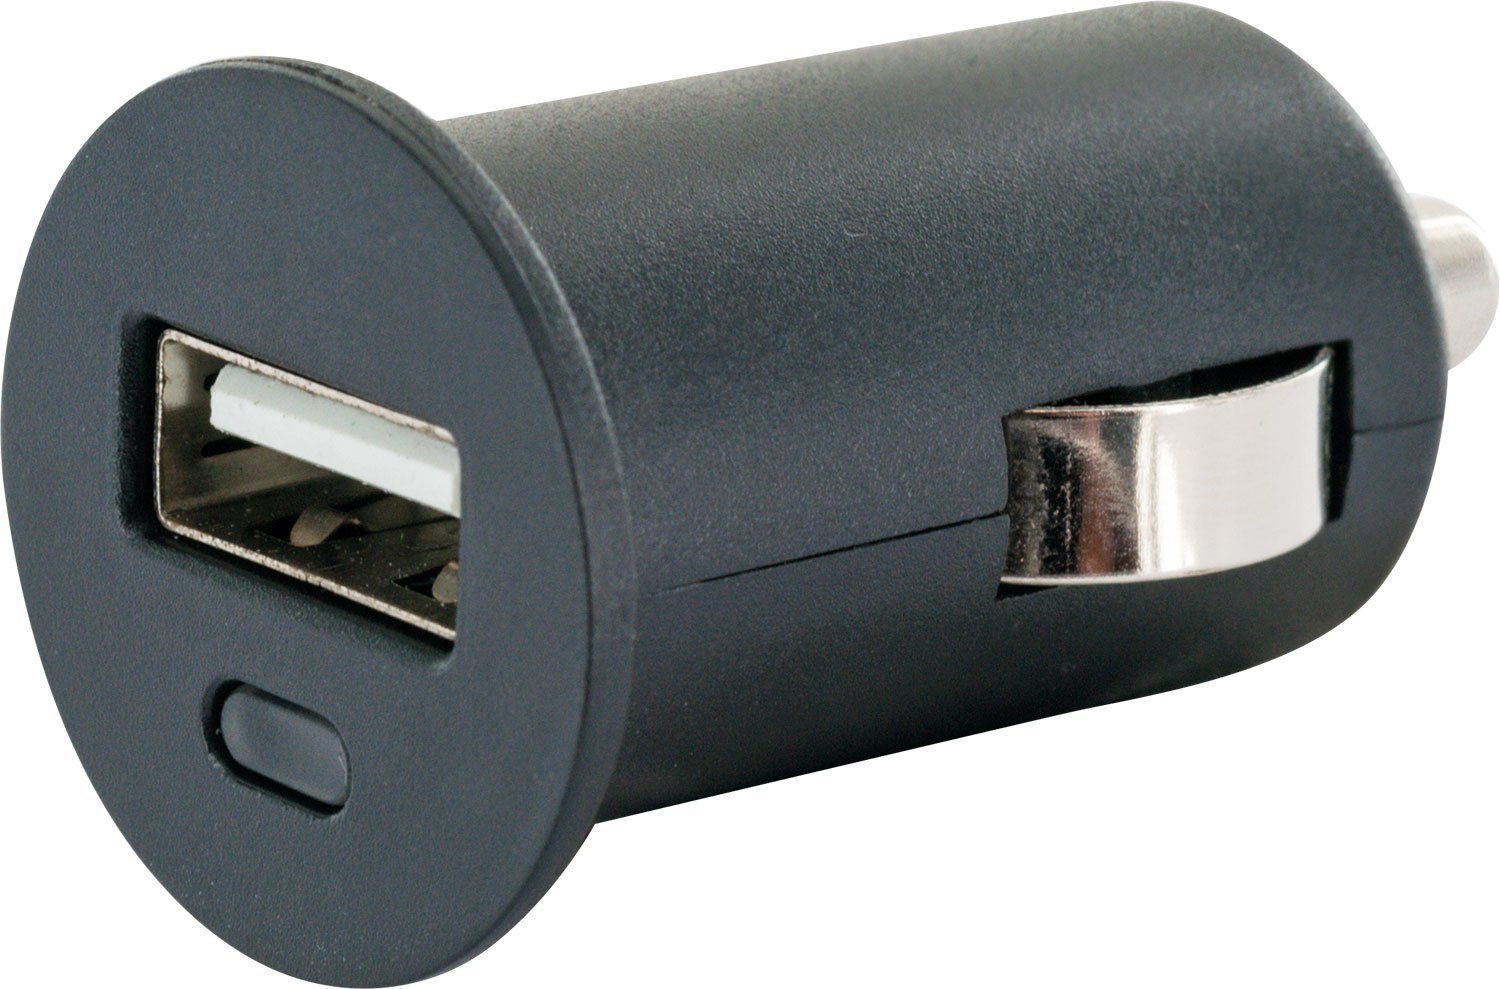 zu KFZ-Adapter integriertes USB Zigarettenanzünder LAD12 2.0 531 Buchse, Schwaiger Multi-Schutz Sicherheitssystem A